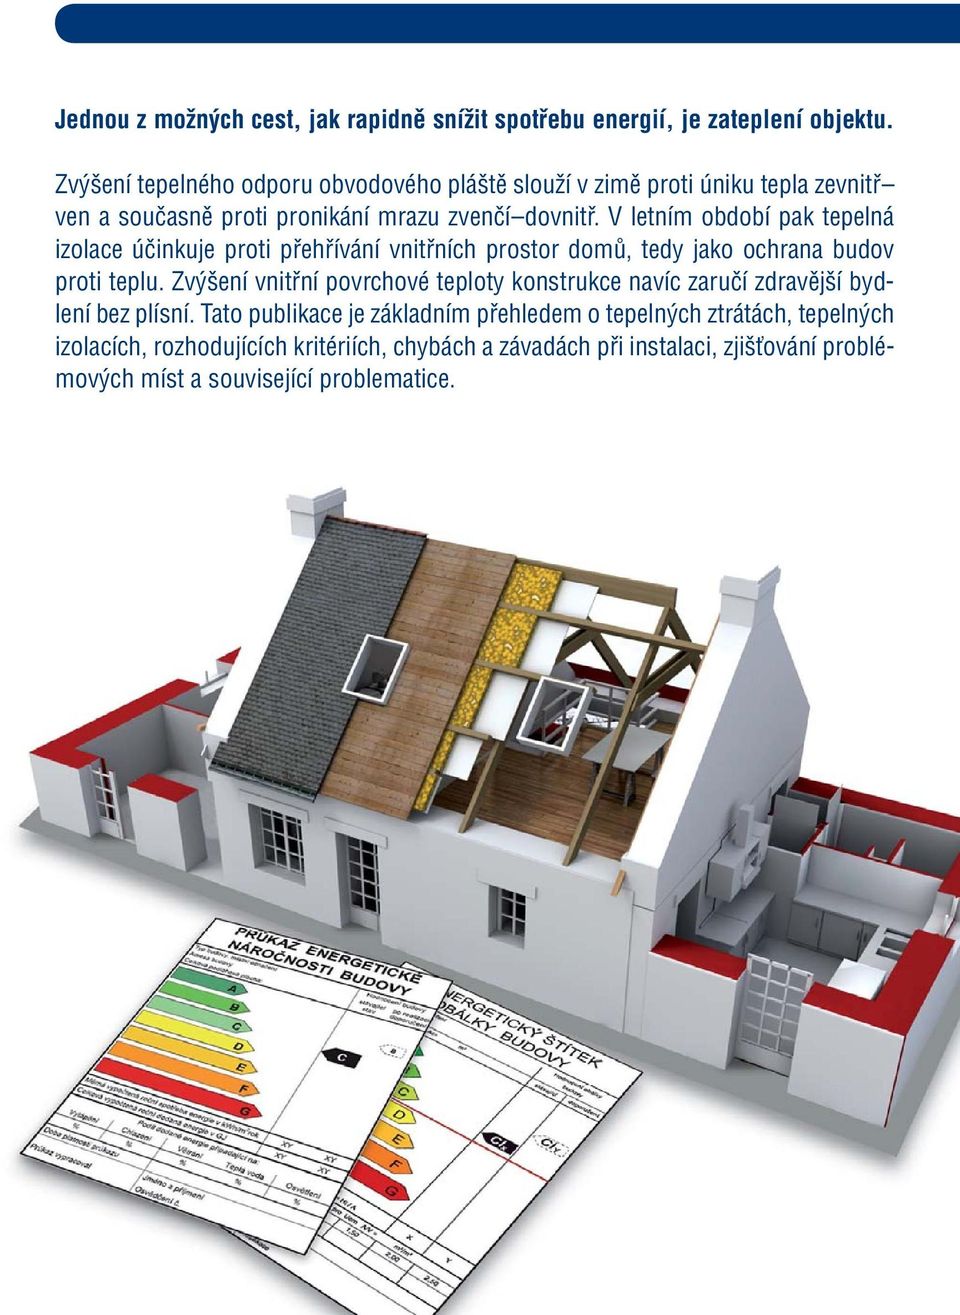 V letním období pak tepelná izolace účinkuje proti přehřívání vnitřních prostor domů, tedy jako ochrana budov proti teplu.